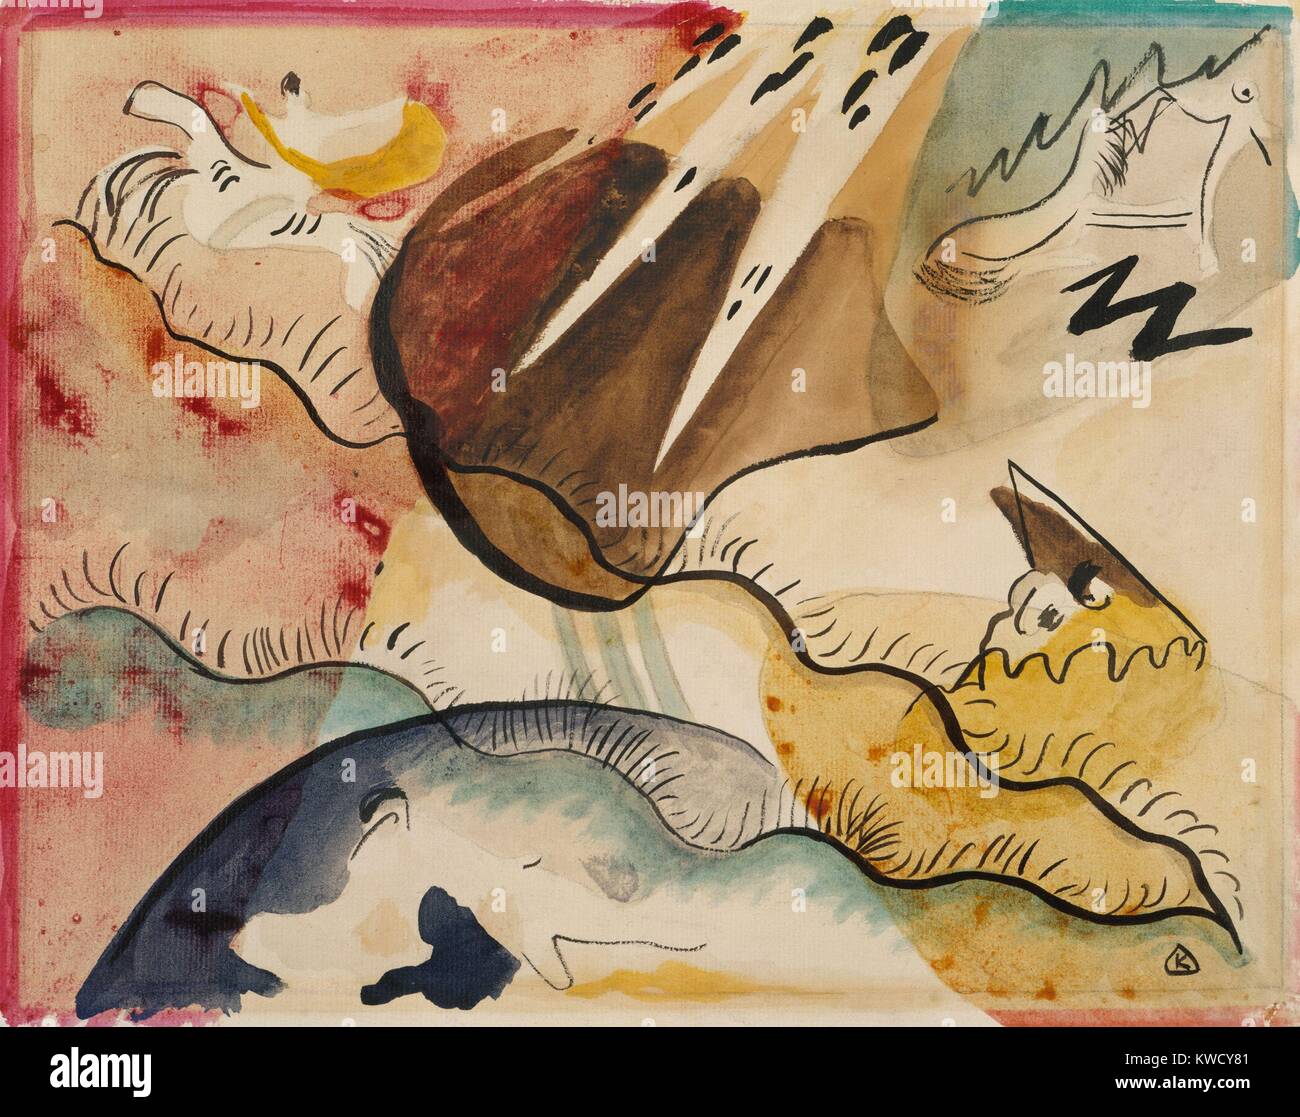 Paysage de pluie, par Vasily Kandinsky, 1911, expressionniste allemand russe dessin, aquarelle sur papier. Dans cette peinture de paysage abstrait, l'artiste utilise la forme et la symbolique pour évoquer un monde, émotionnel et spirituel (BSLOC 2017 5 144) Banque D'Images